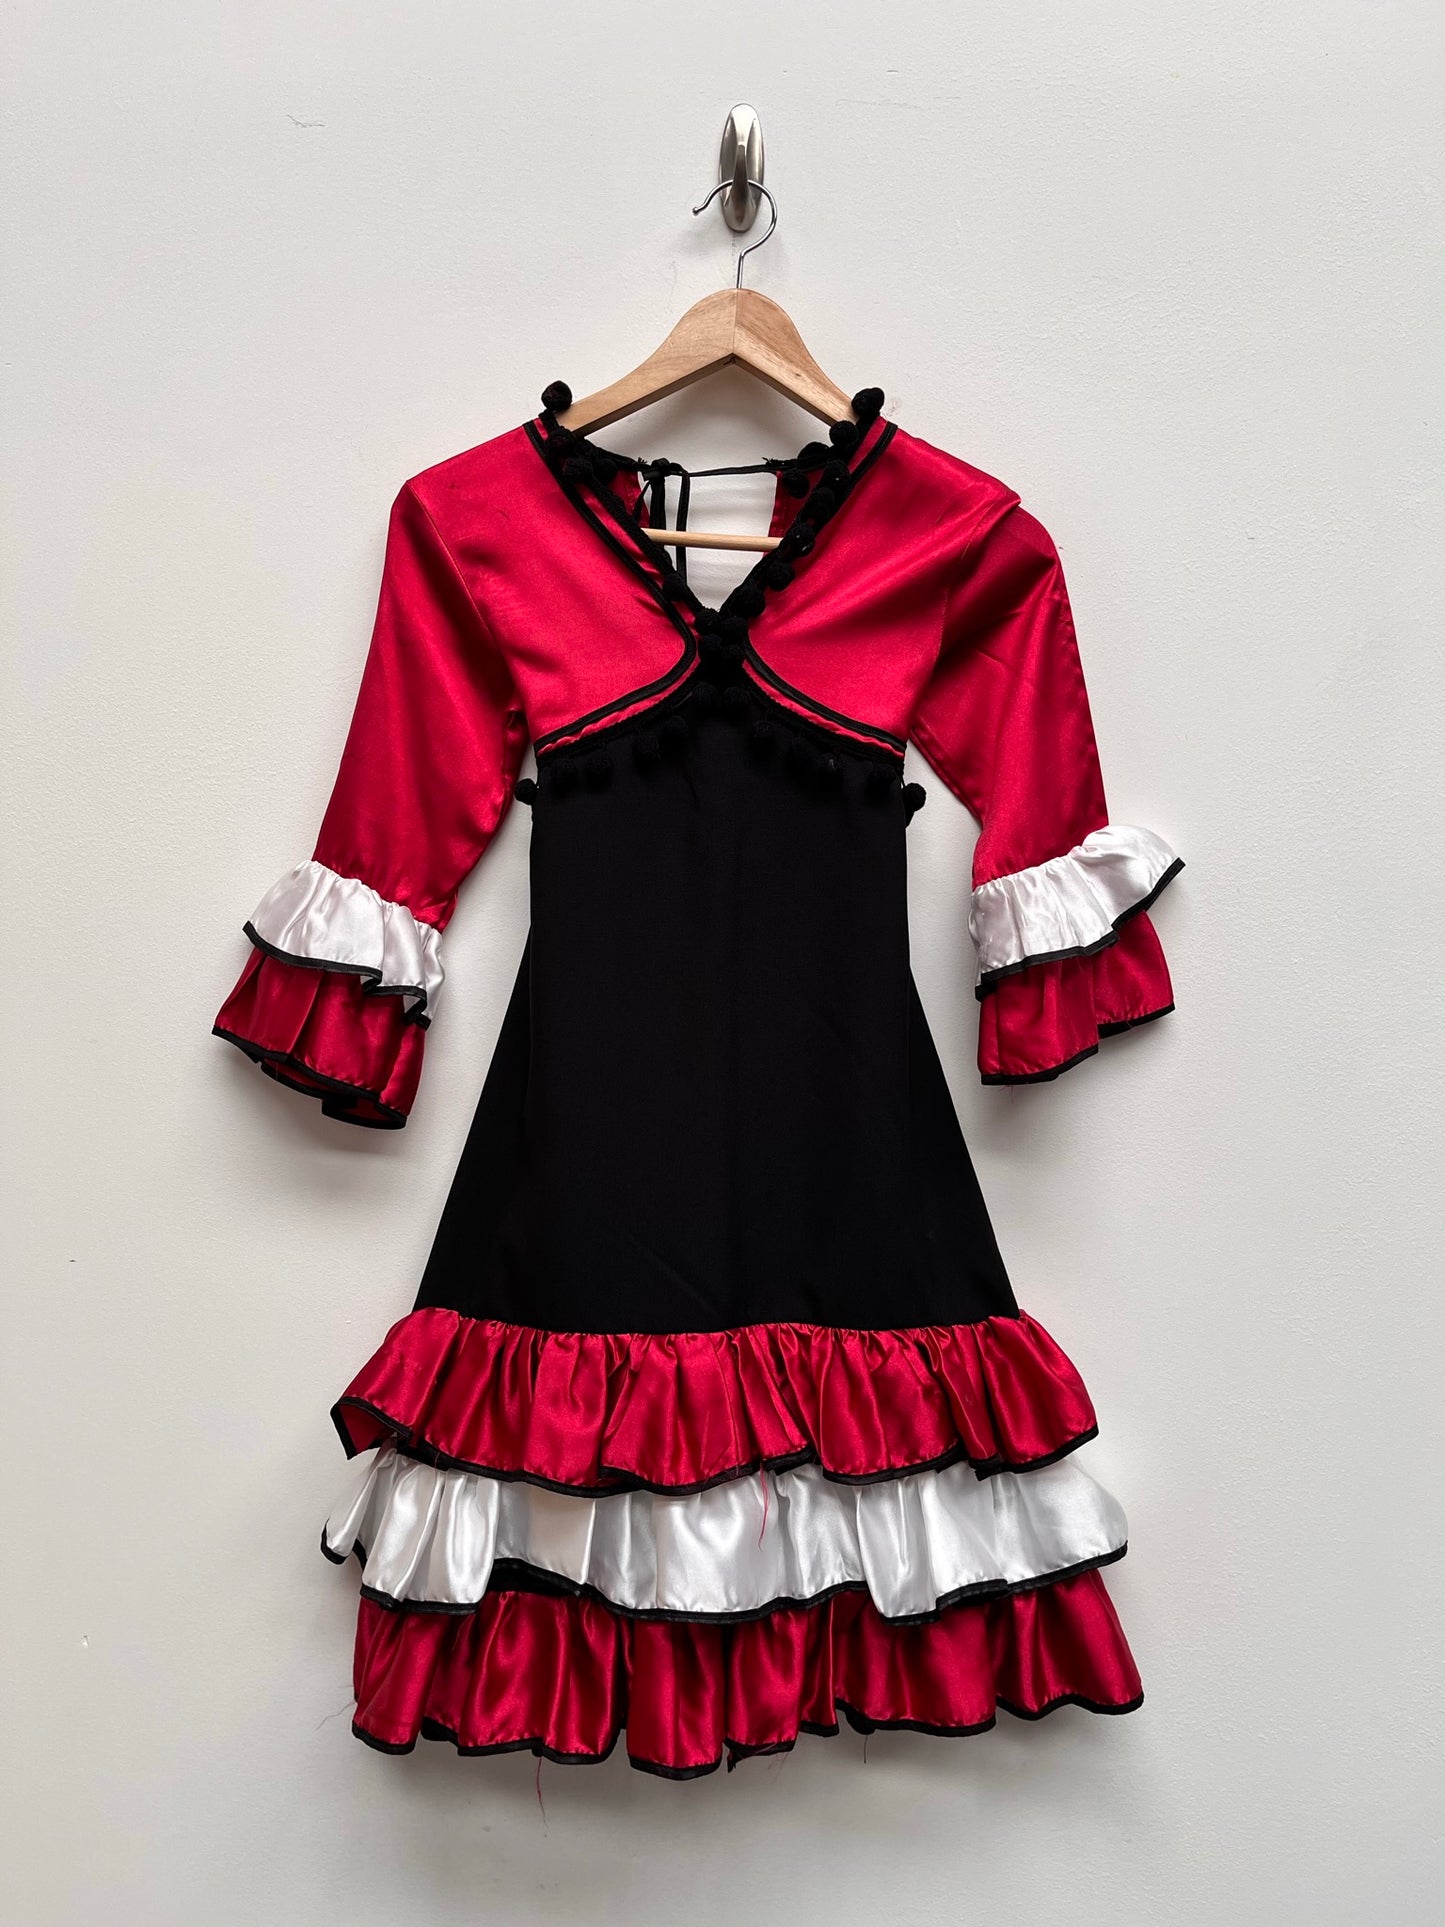 Childs Red, White & Black Spanish Senorita Dress 8 years